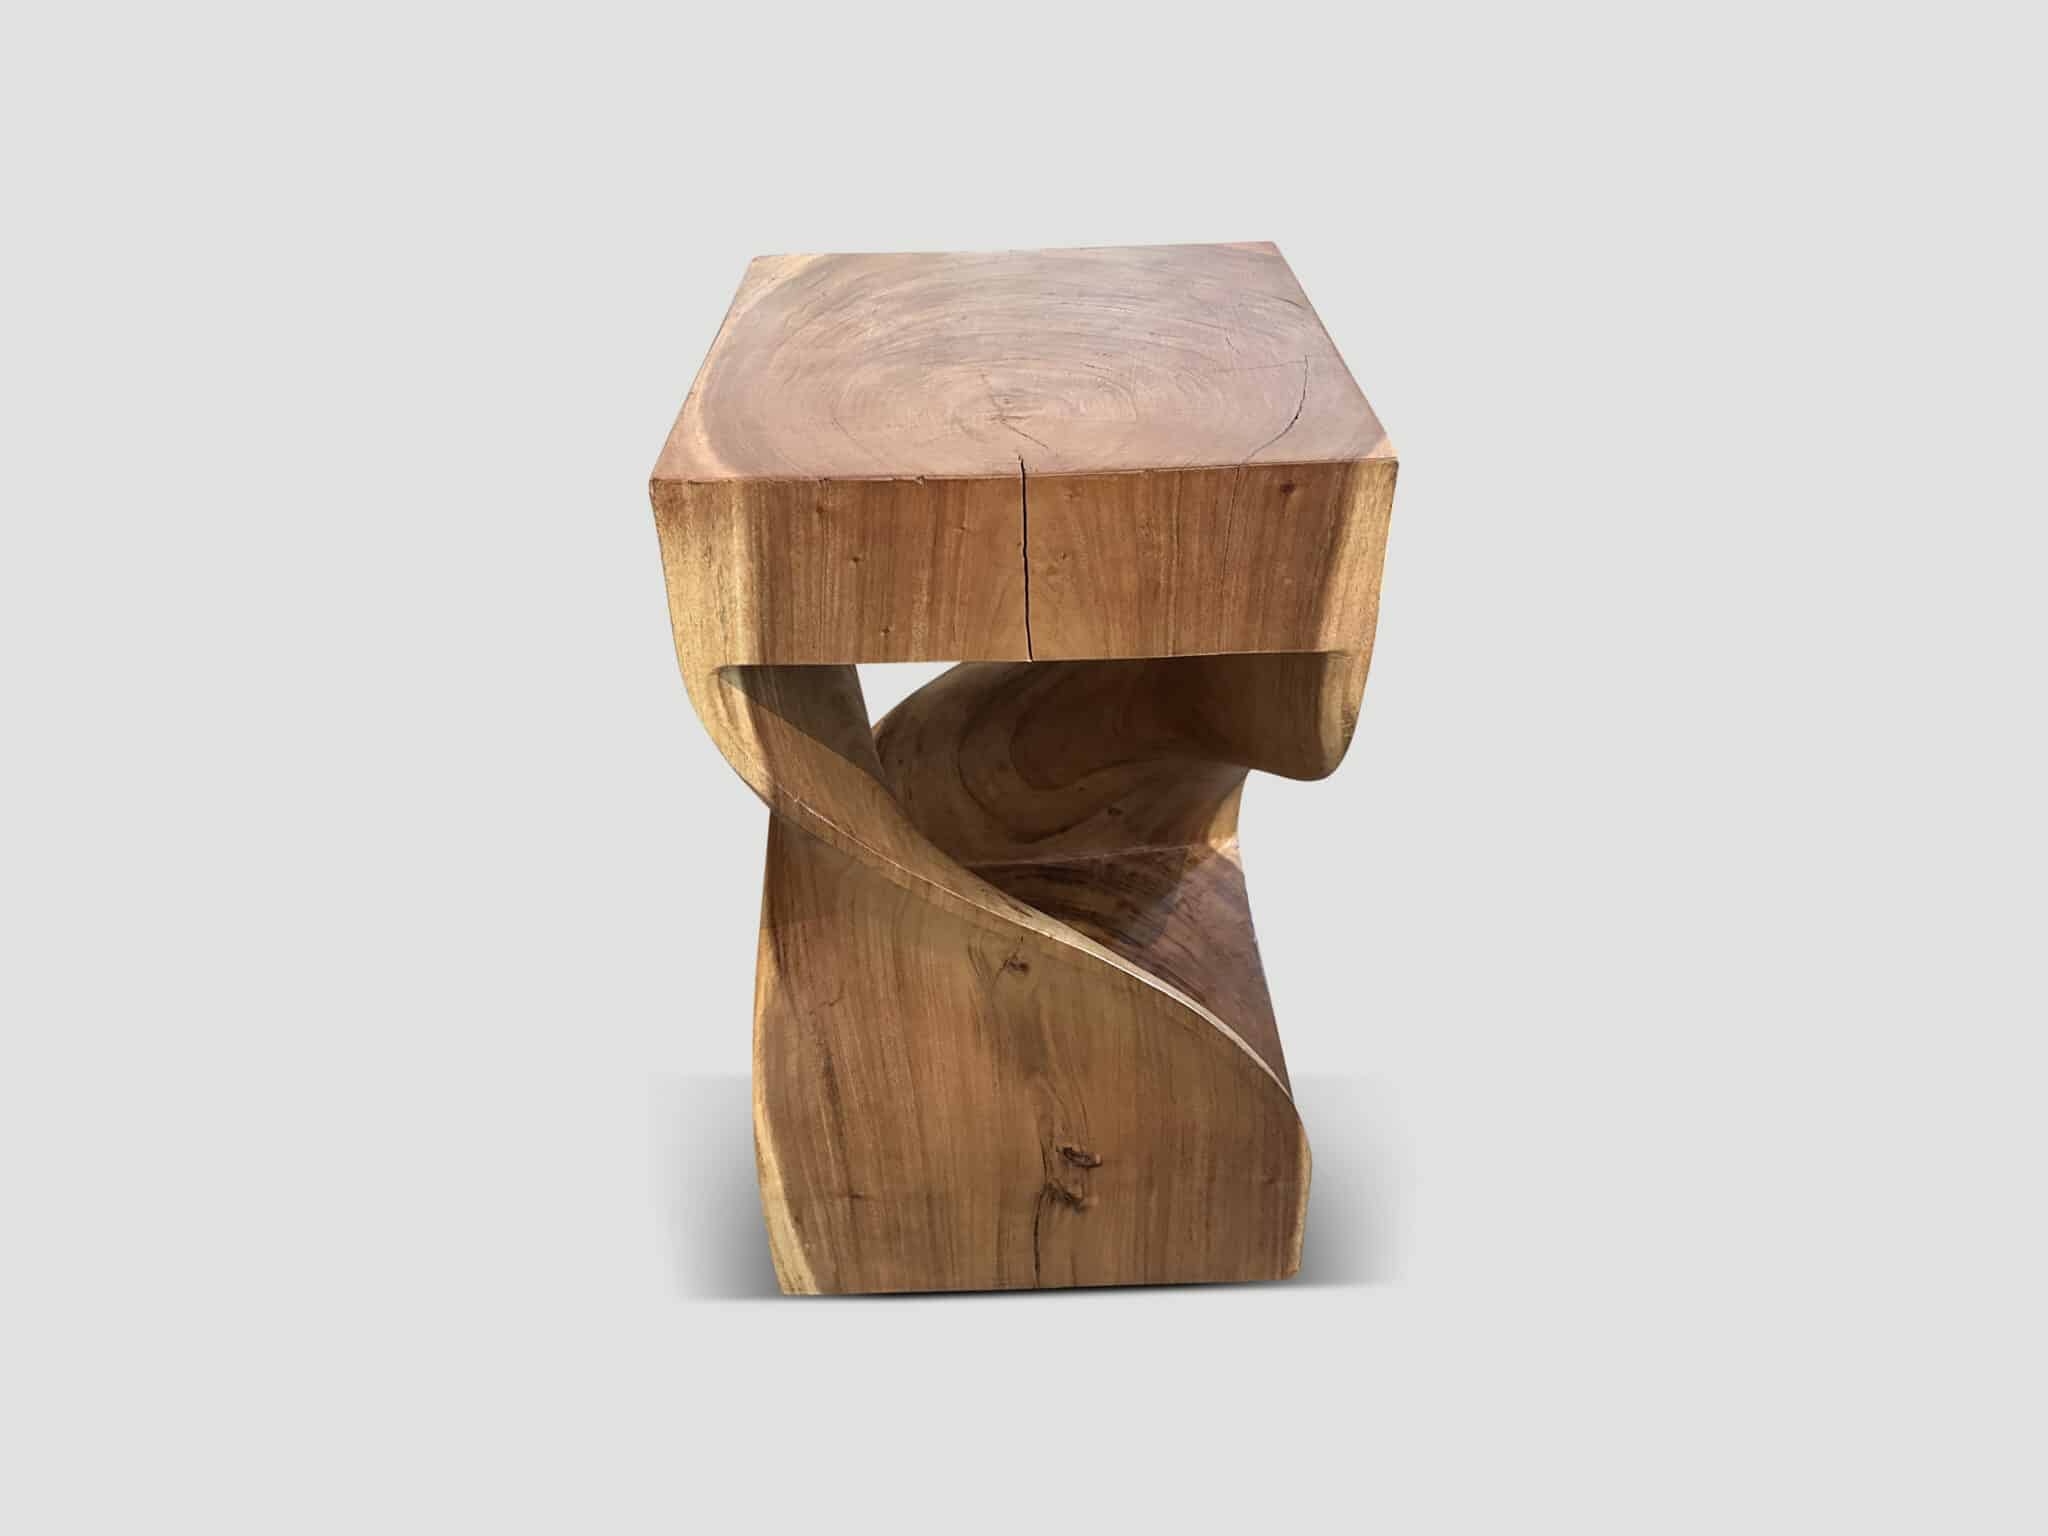 sculptural side table or pedestal